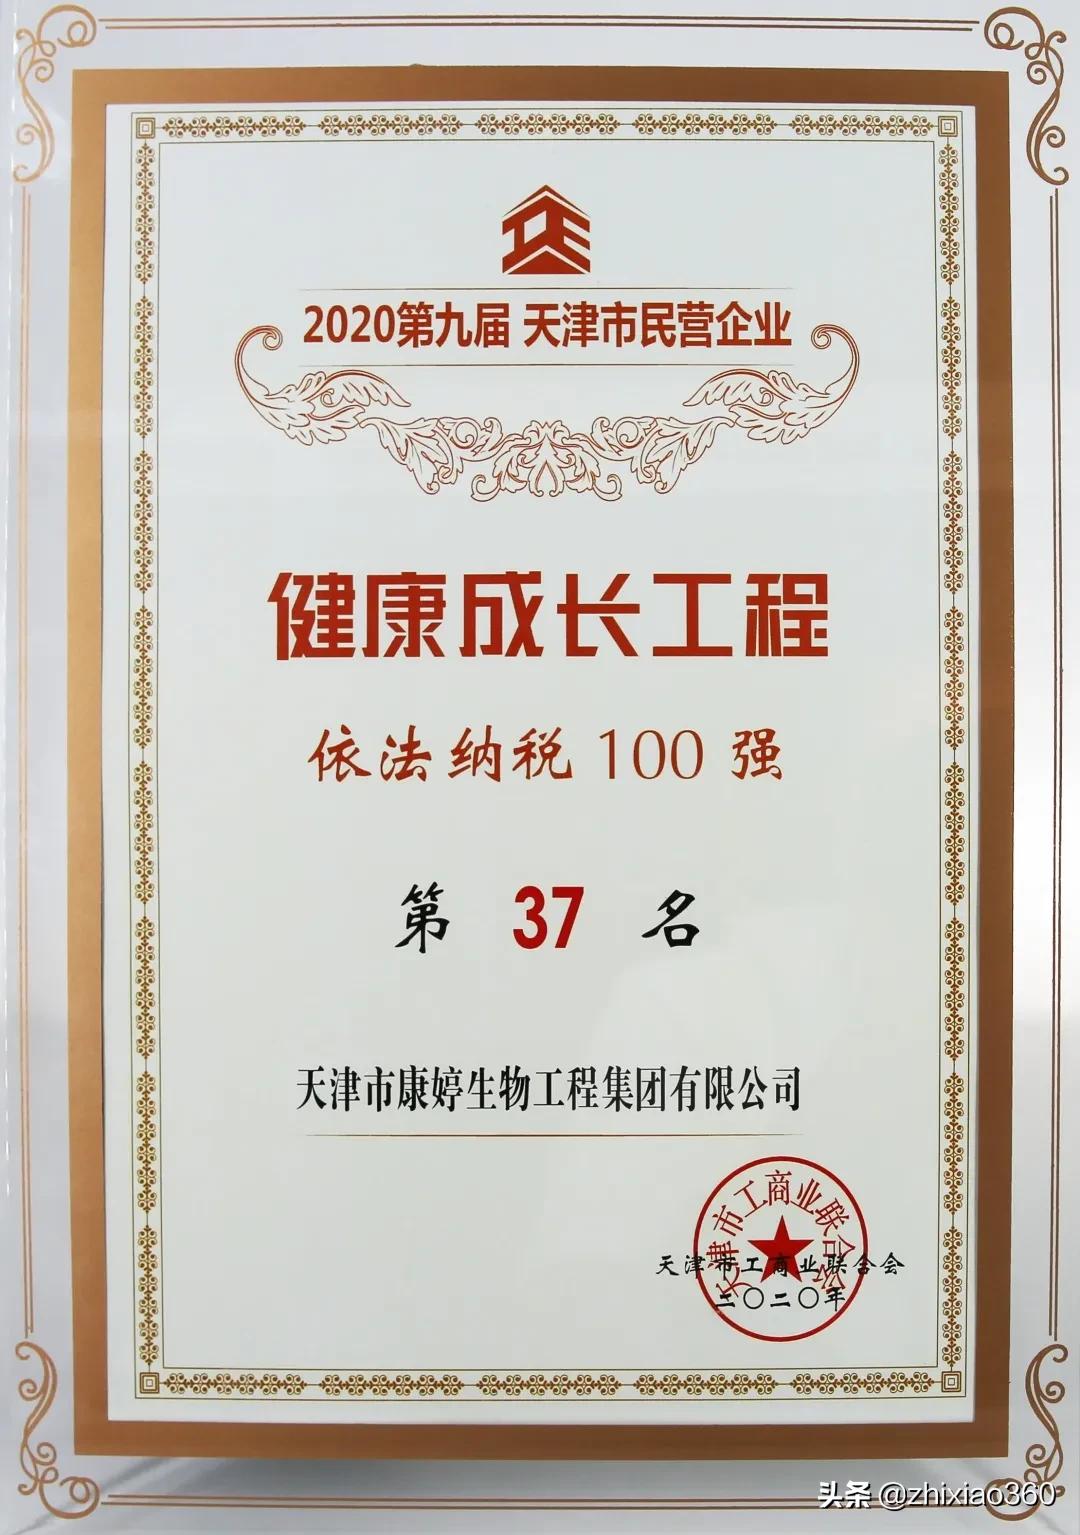 康婷集团荣膺“2020年度企业社会责任先锋奖”